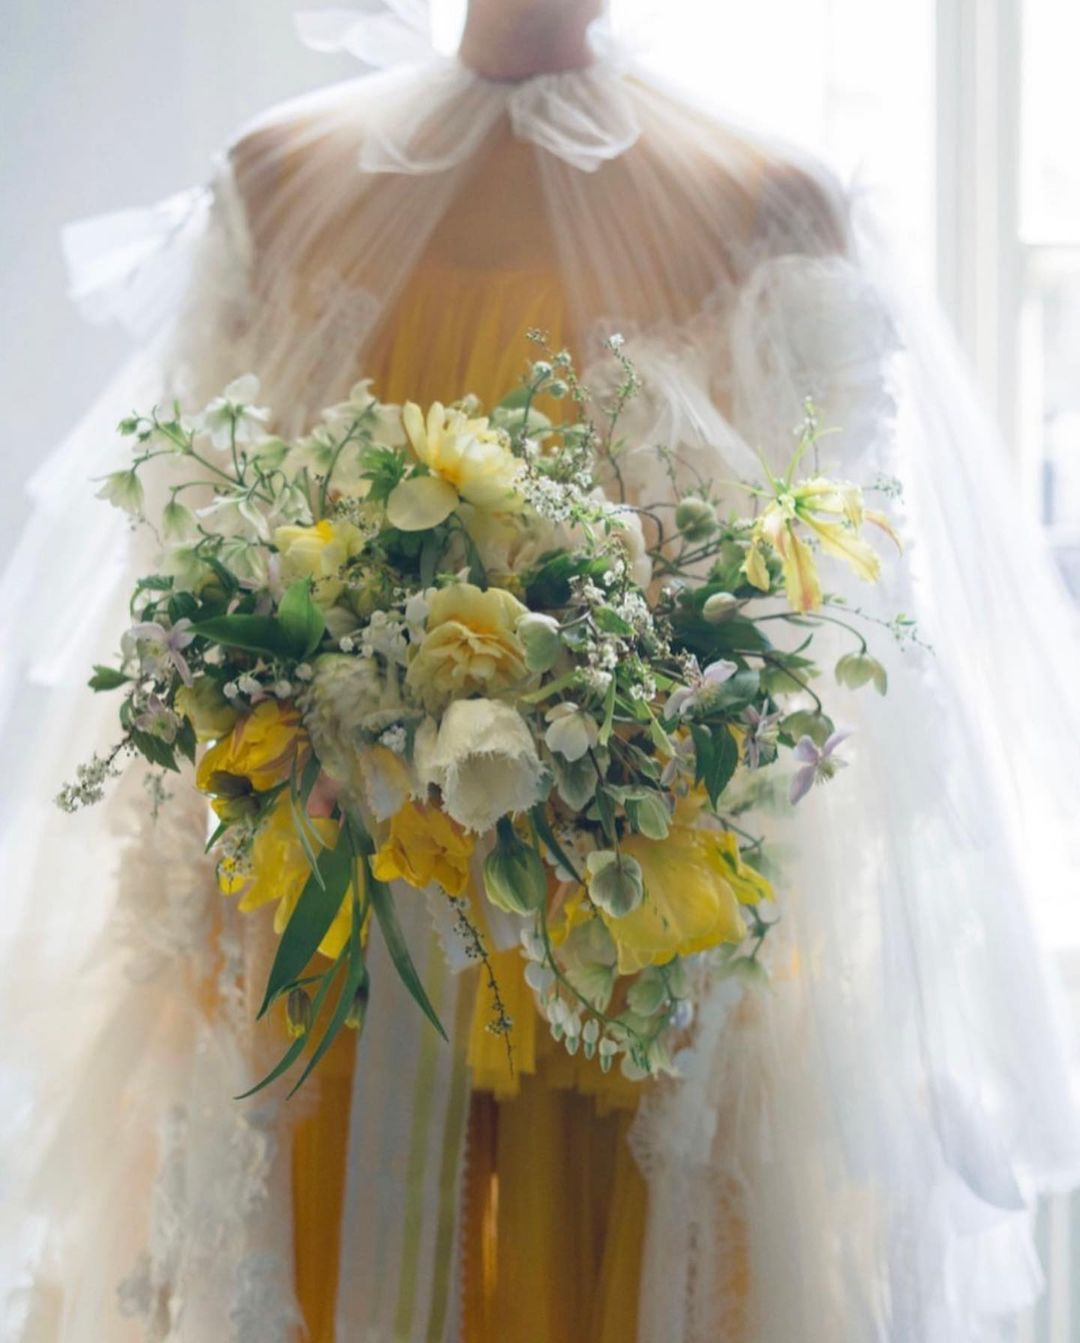 Wedding Florist in the USA | Wedding Decorators, Flower Arrangements in ...